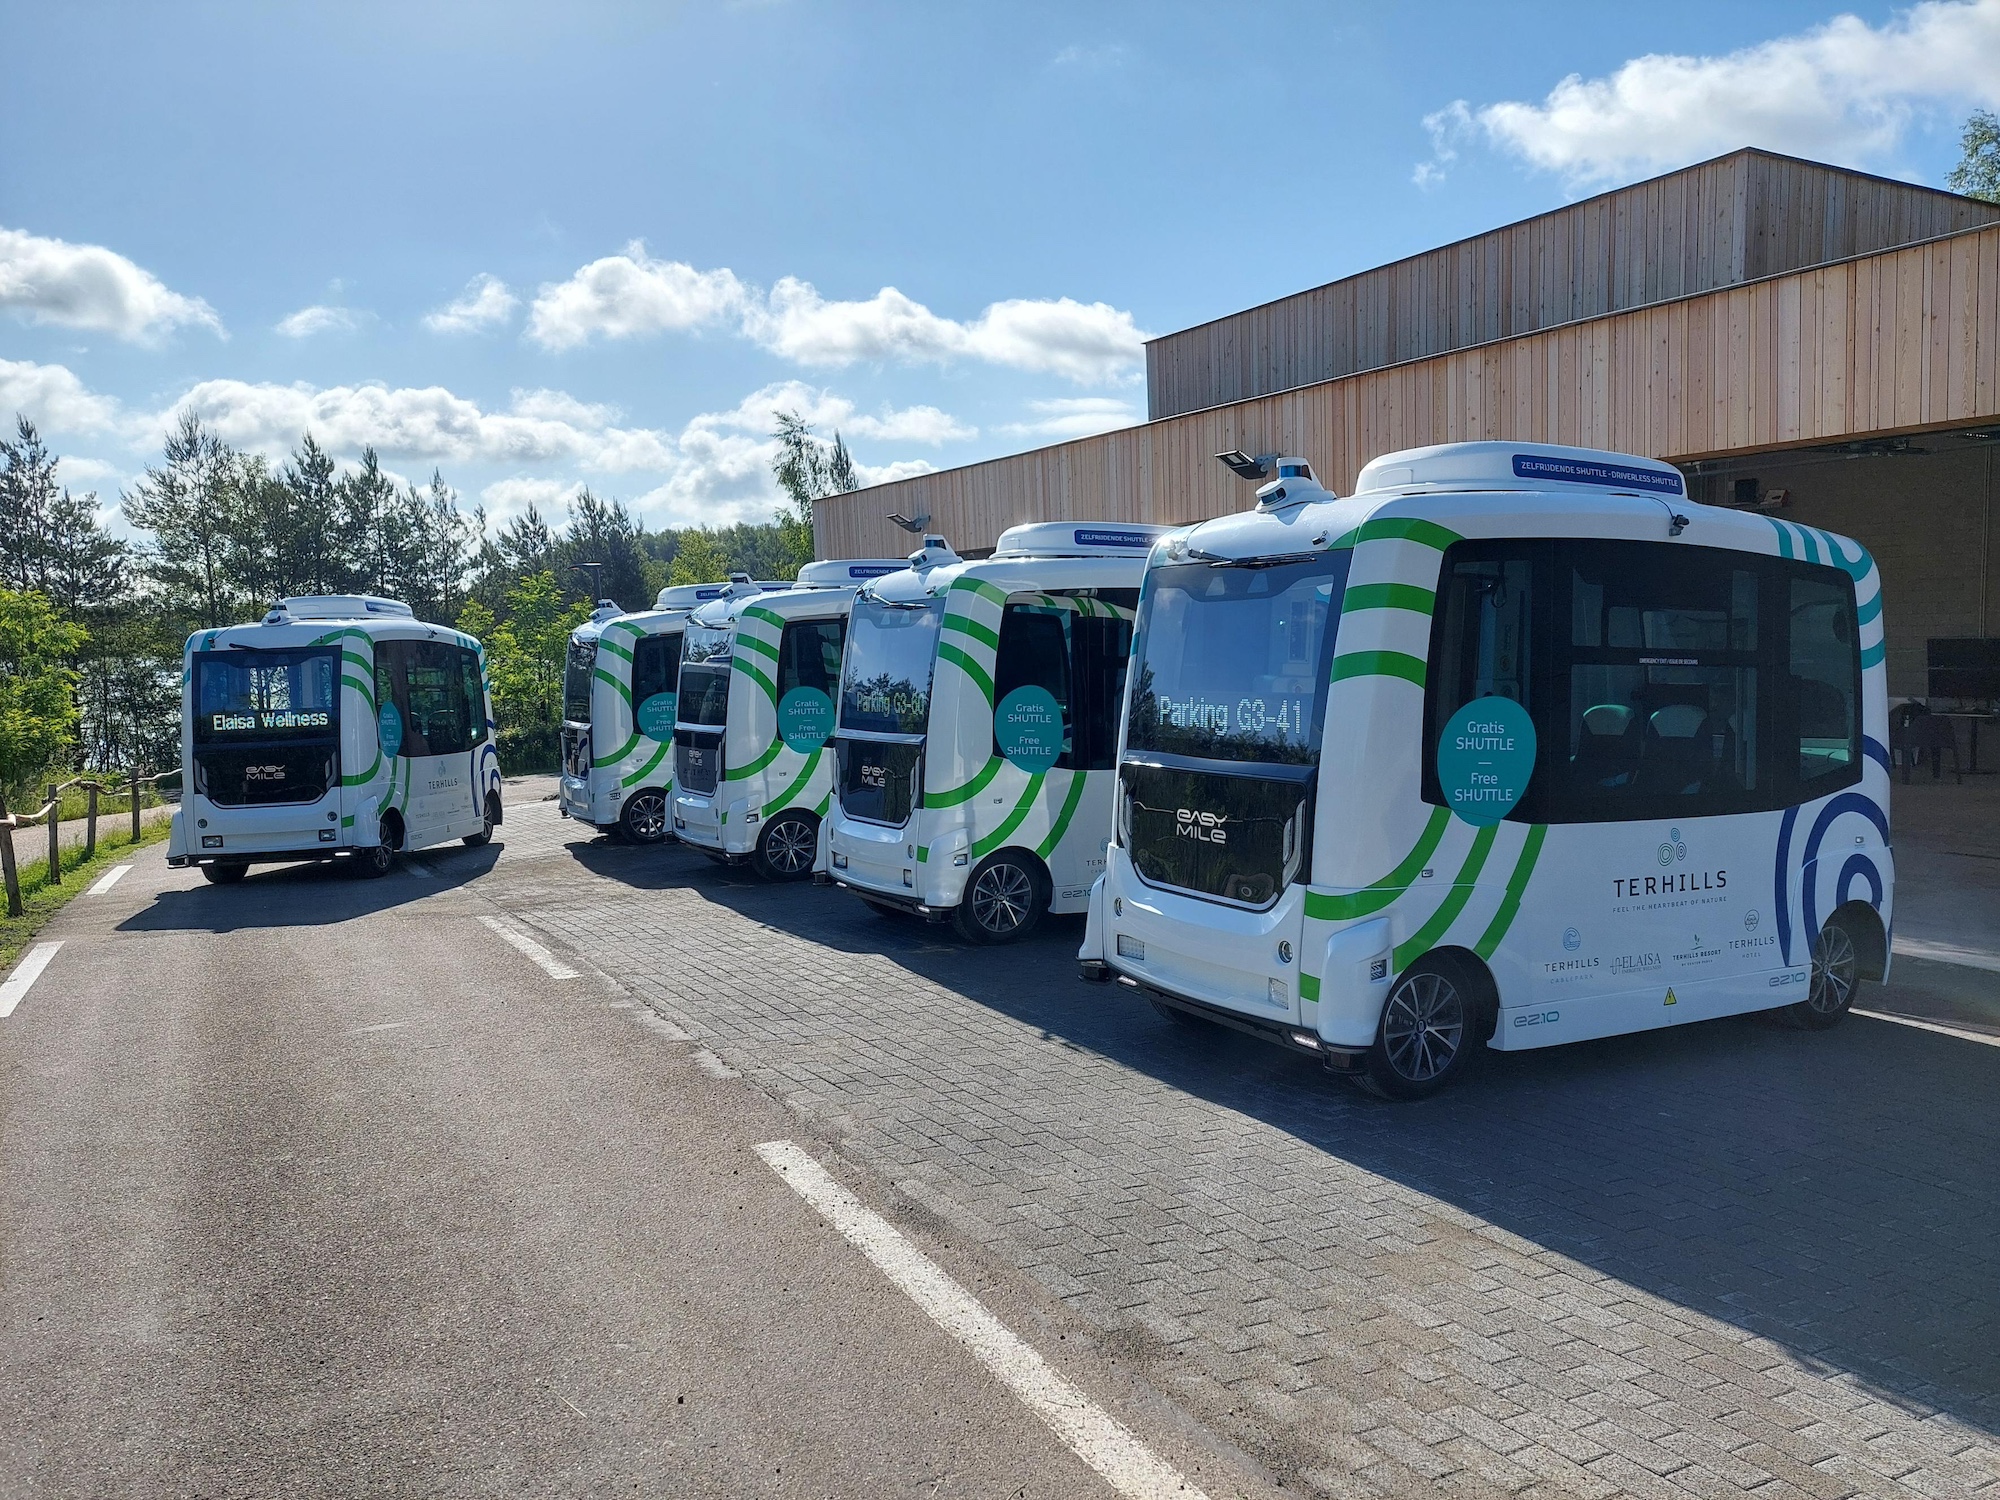 Terhills fleet of 5 driverless busses